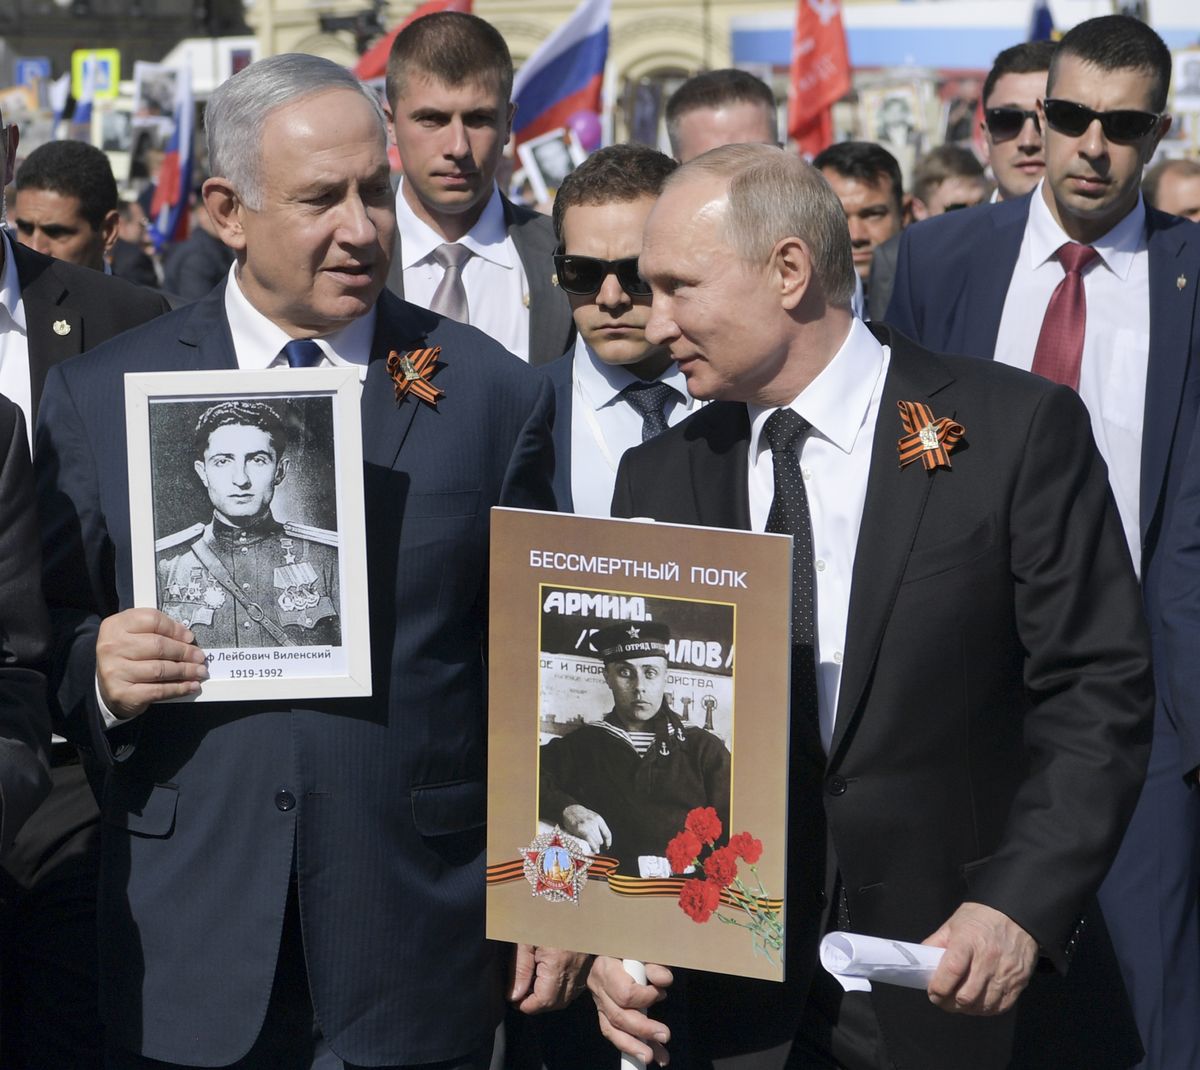 Биньямин Нетаньяху участвует в акции "Бессмертный полк" вместе с Путиным, Москва, 9 мая 2018 года.